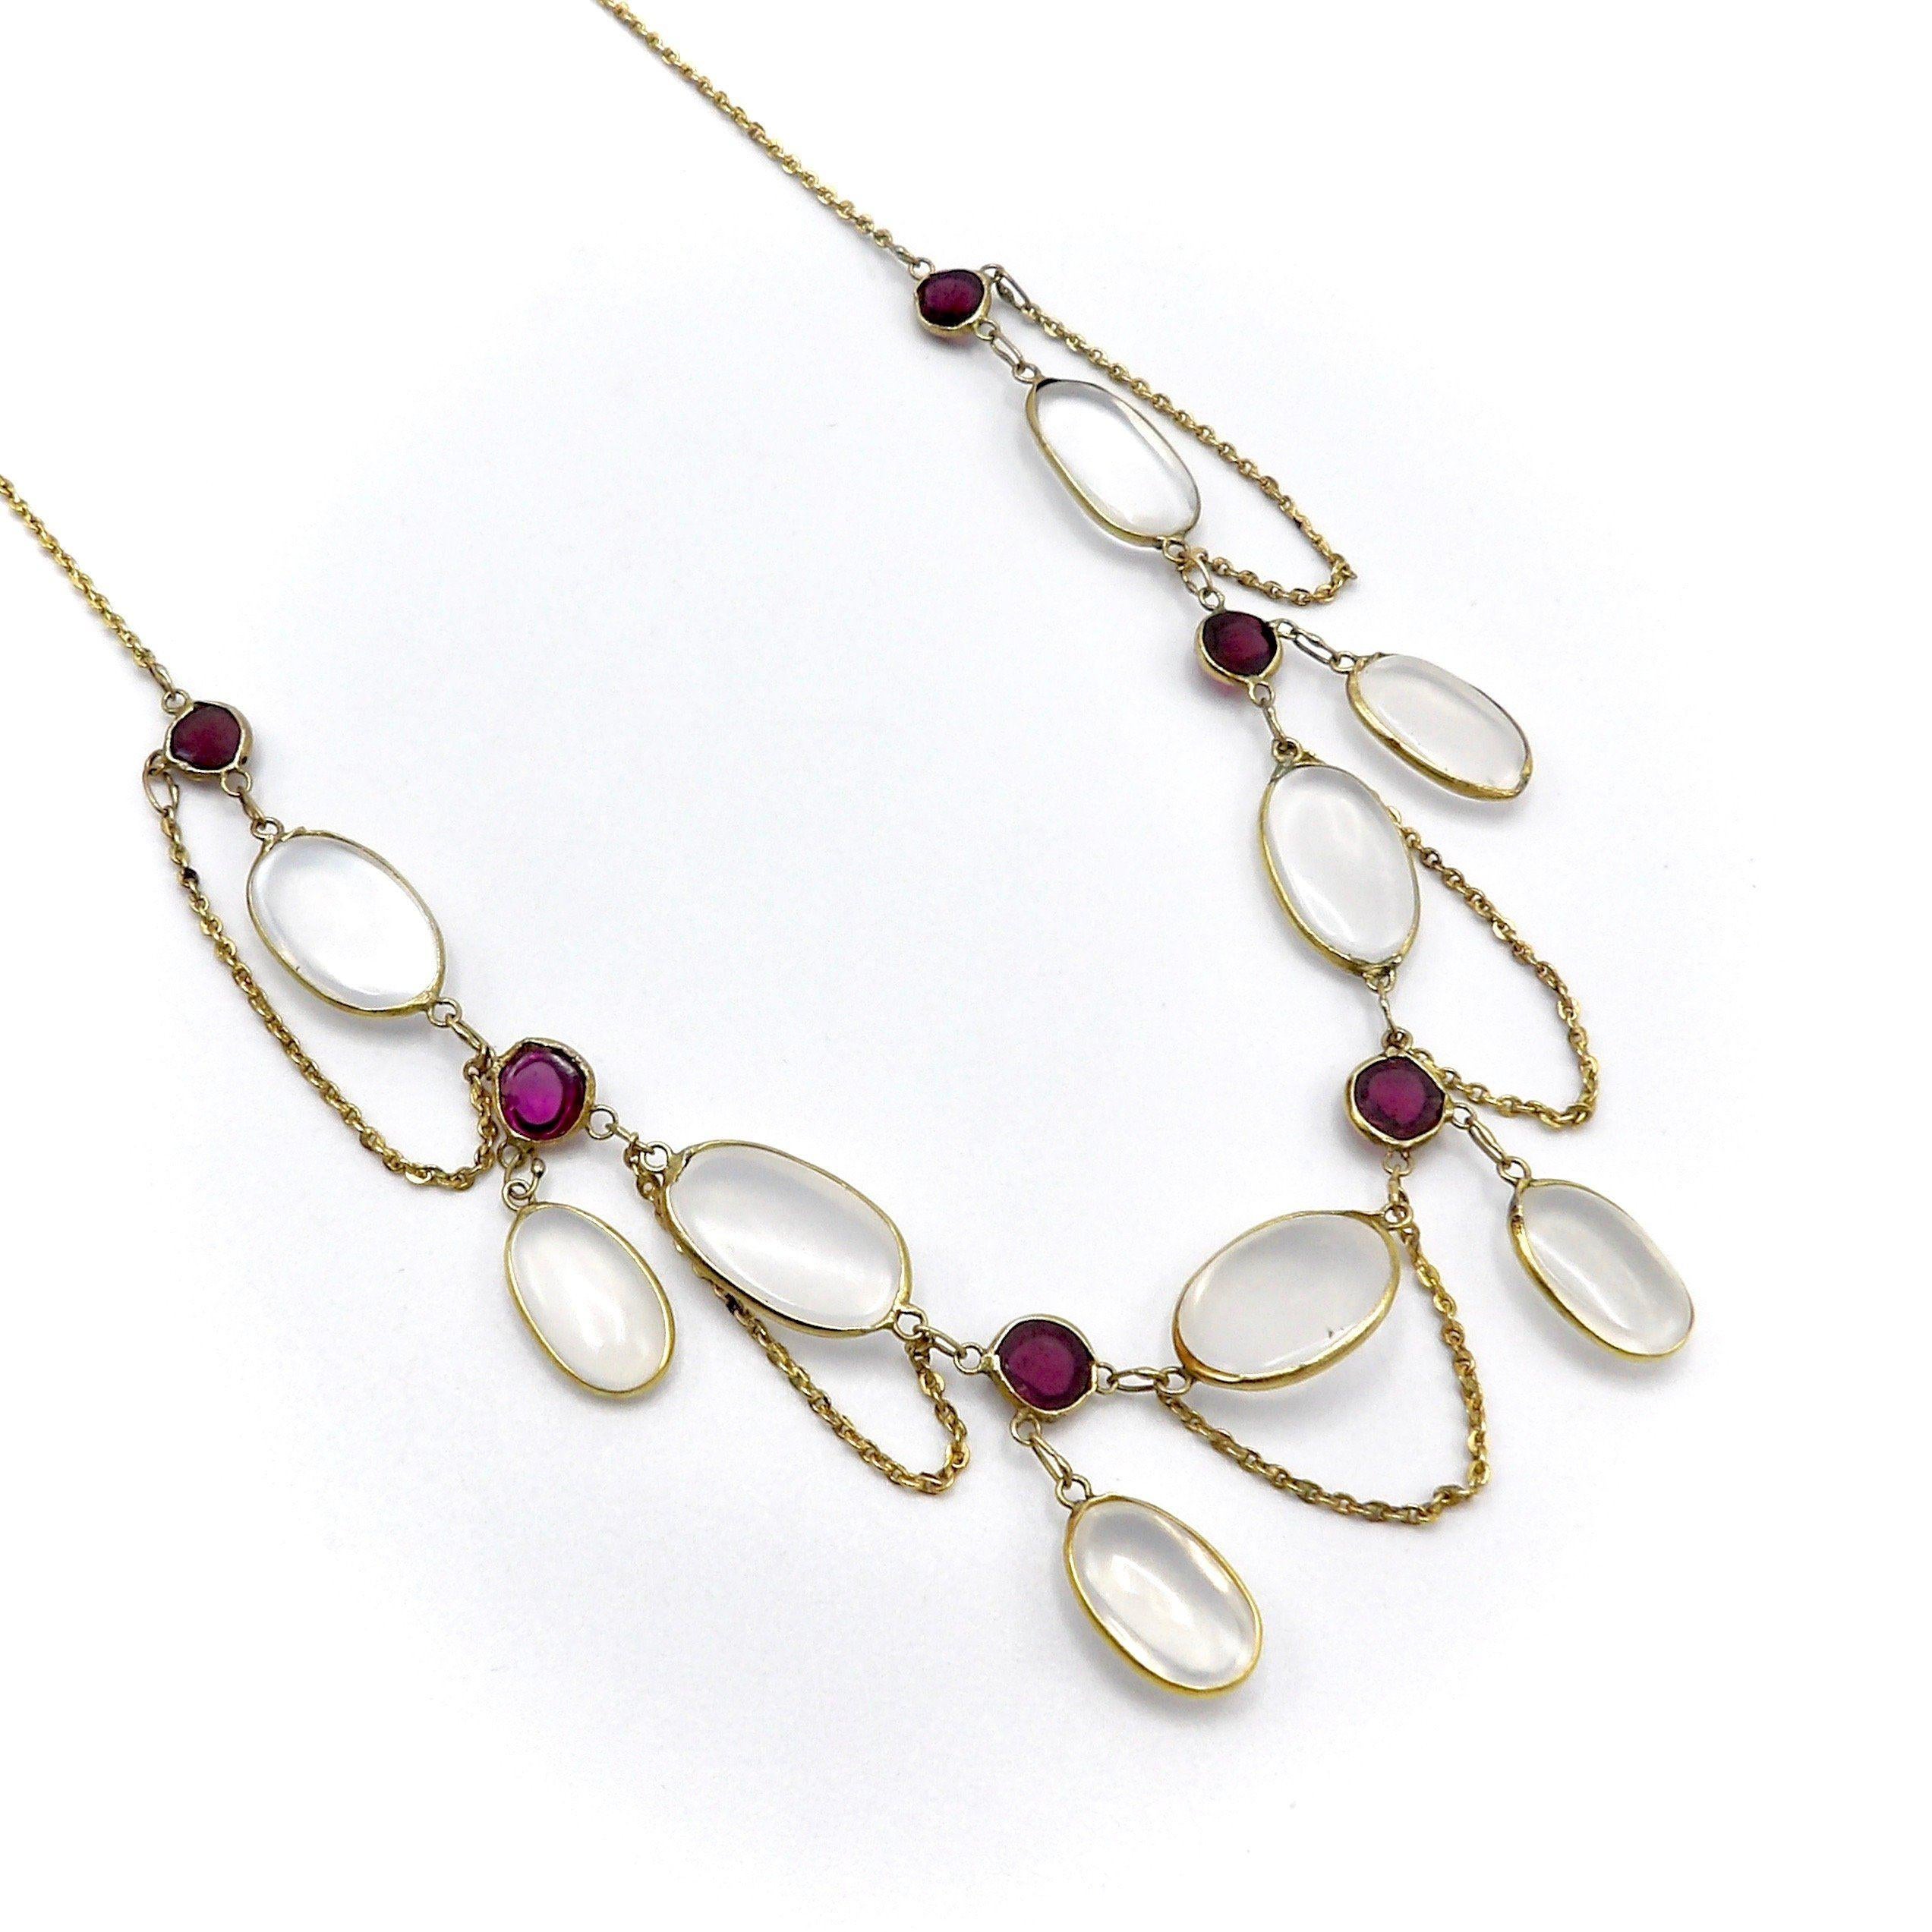 Diese wunderschöne Girlanden-Halskette besteht aus einem zarten Arrangement von Mondstein- und Granat-Cabochons, die in der Edwardianischen Ära sehr beliebt waren. Feminin und romantisch drapiert sich die Halskette in wunderschön geschwungenen